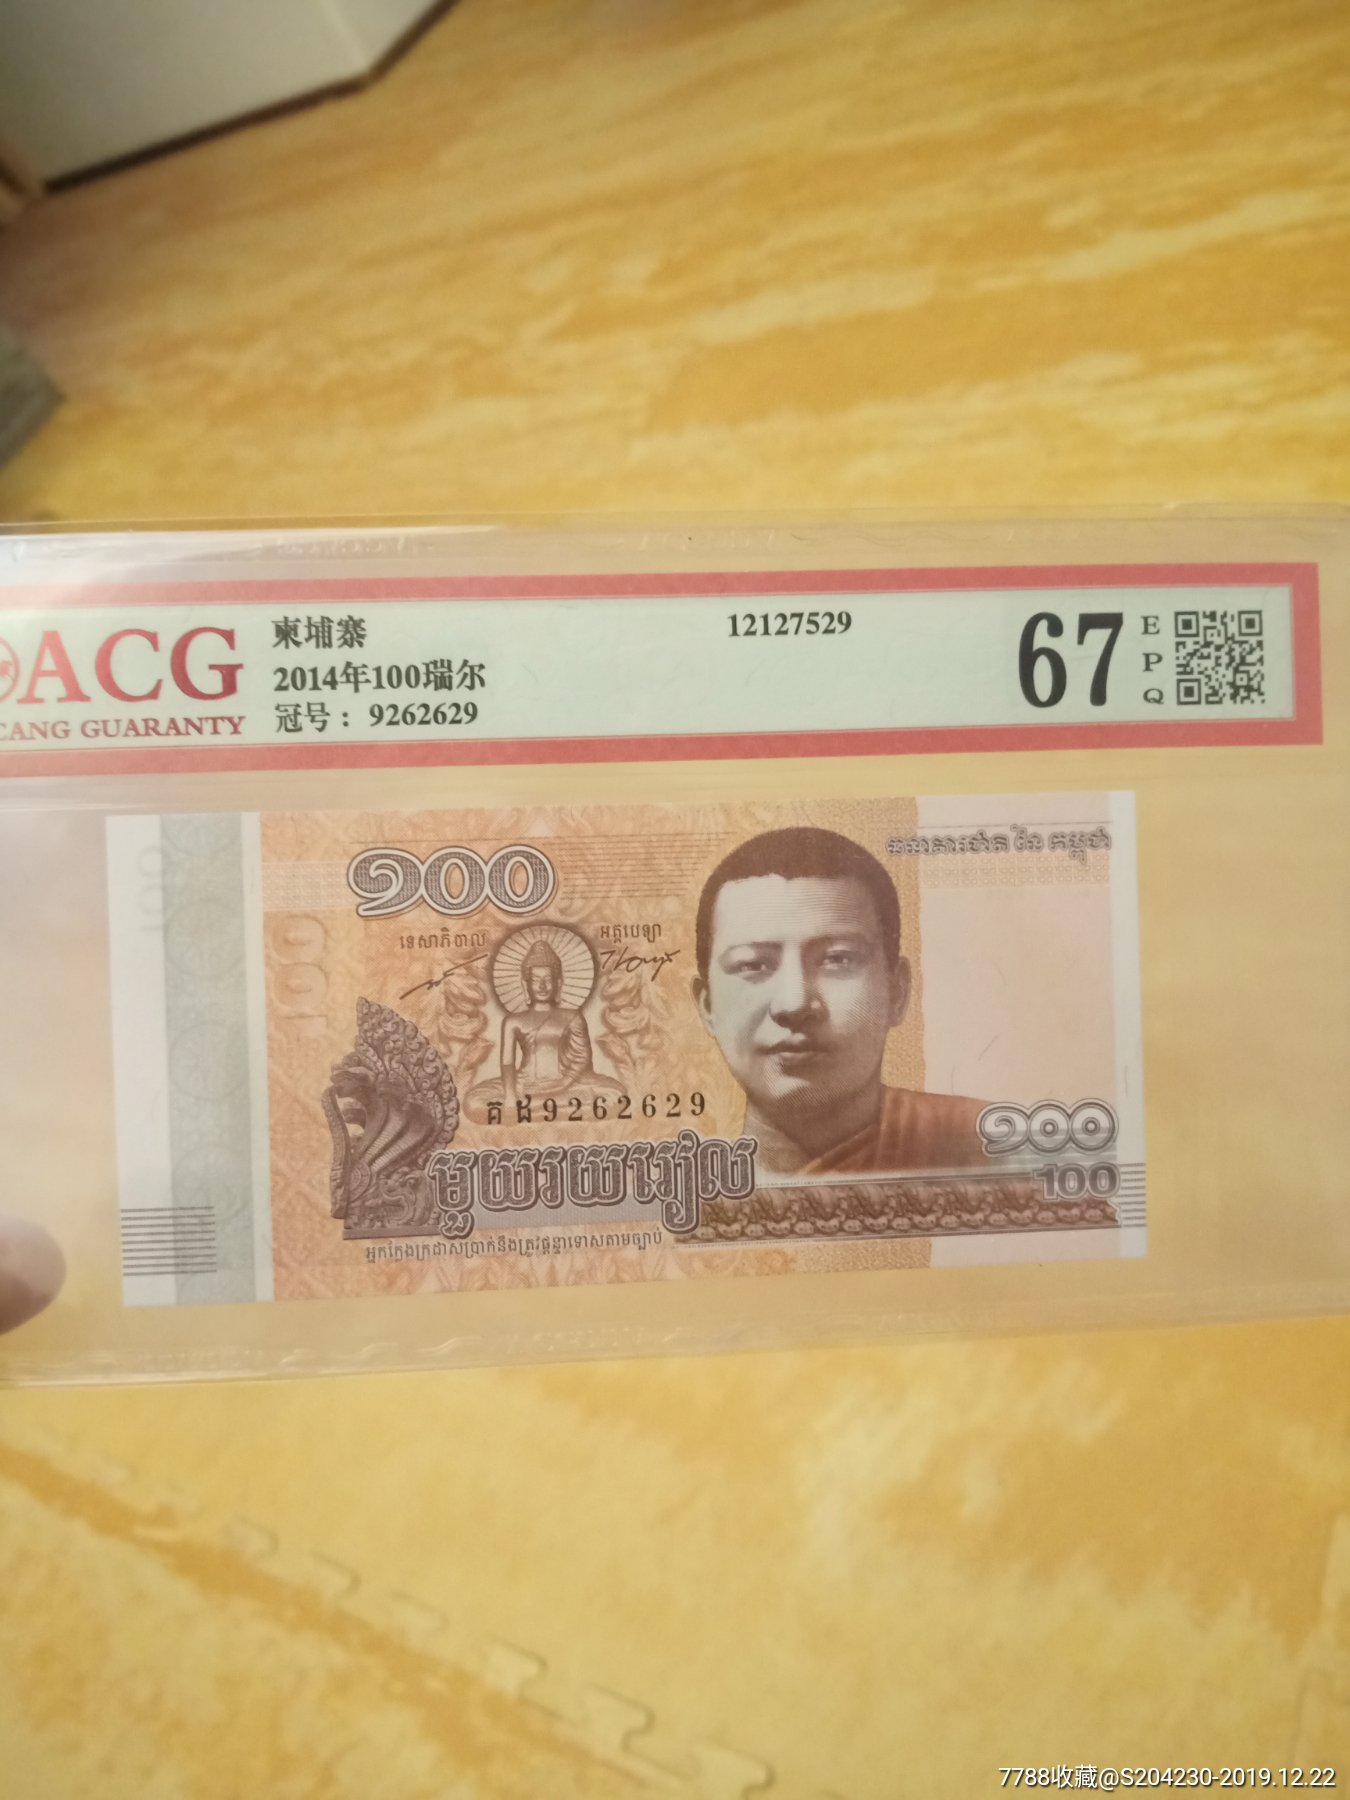 柬埔寨2000纸币图片,柬埔寨币9000元图片 - 伤感说说吧